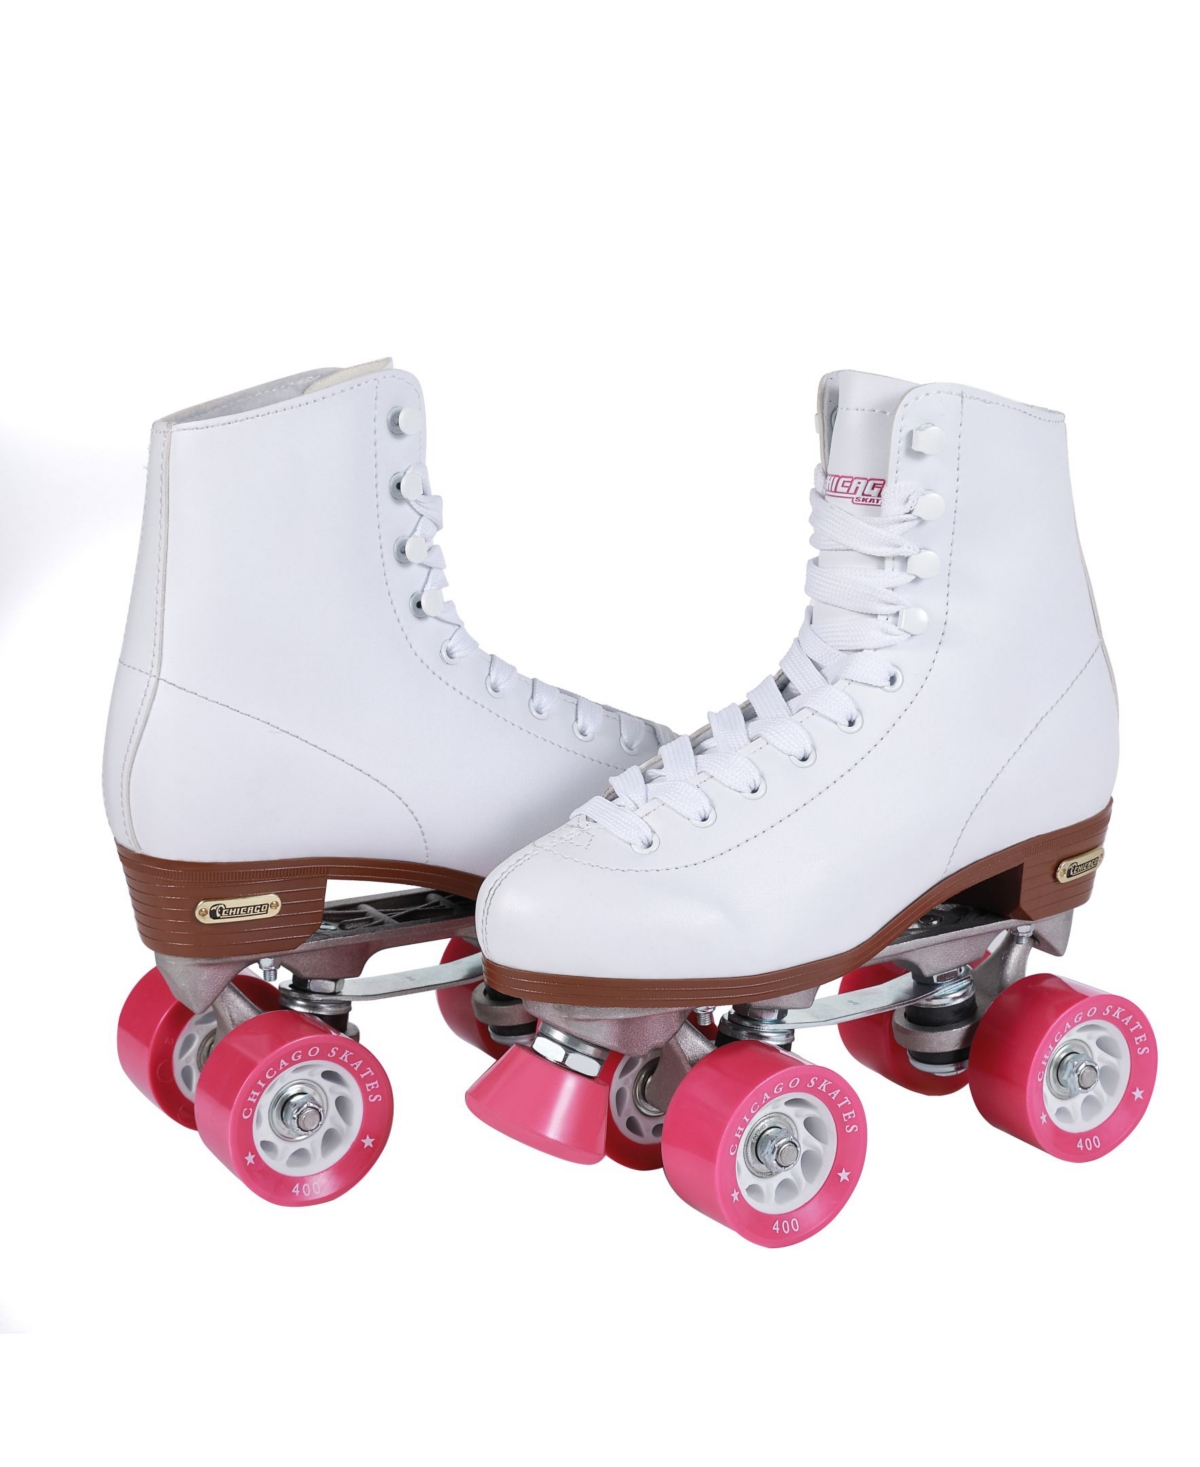 Women's Rink Roller Skates - Size 4 - White